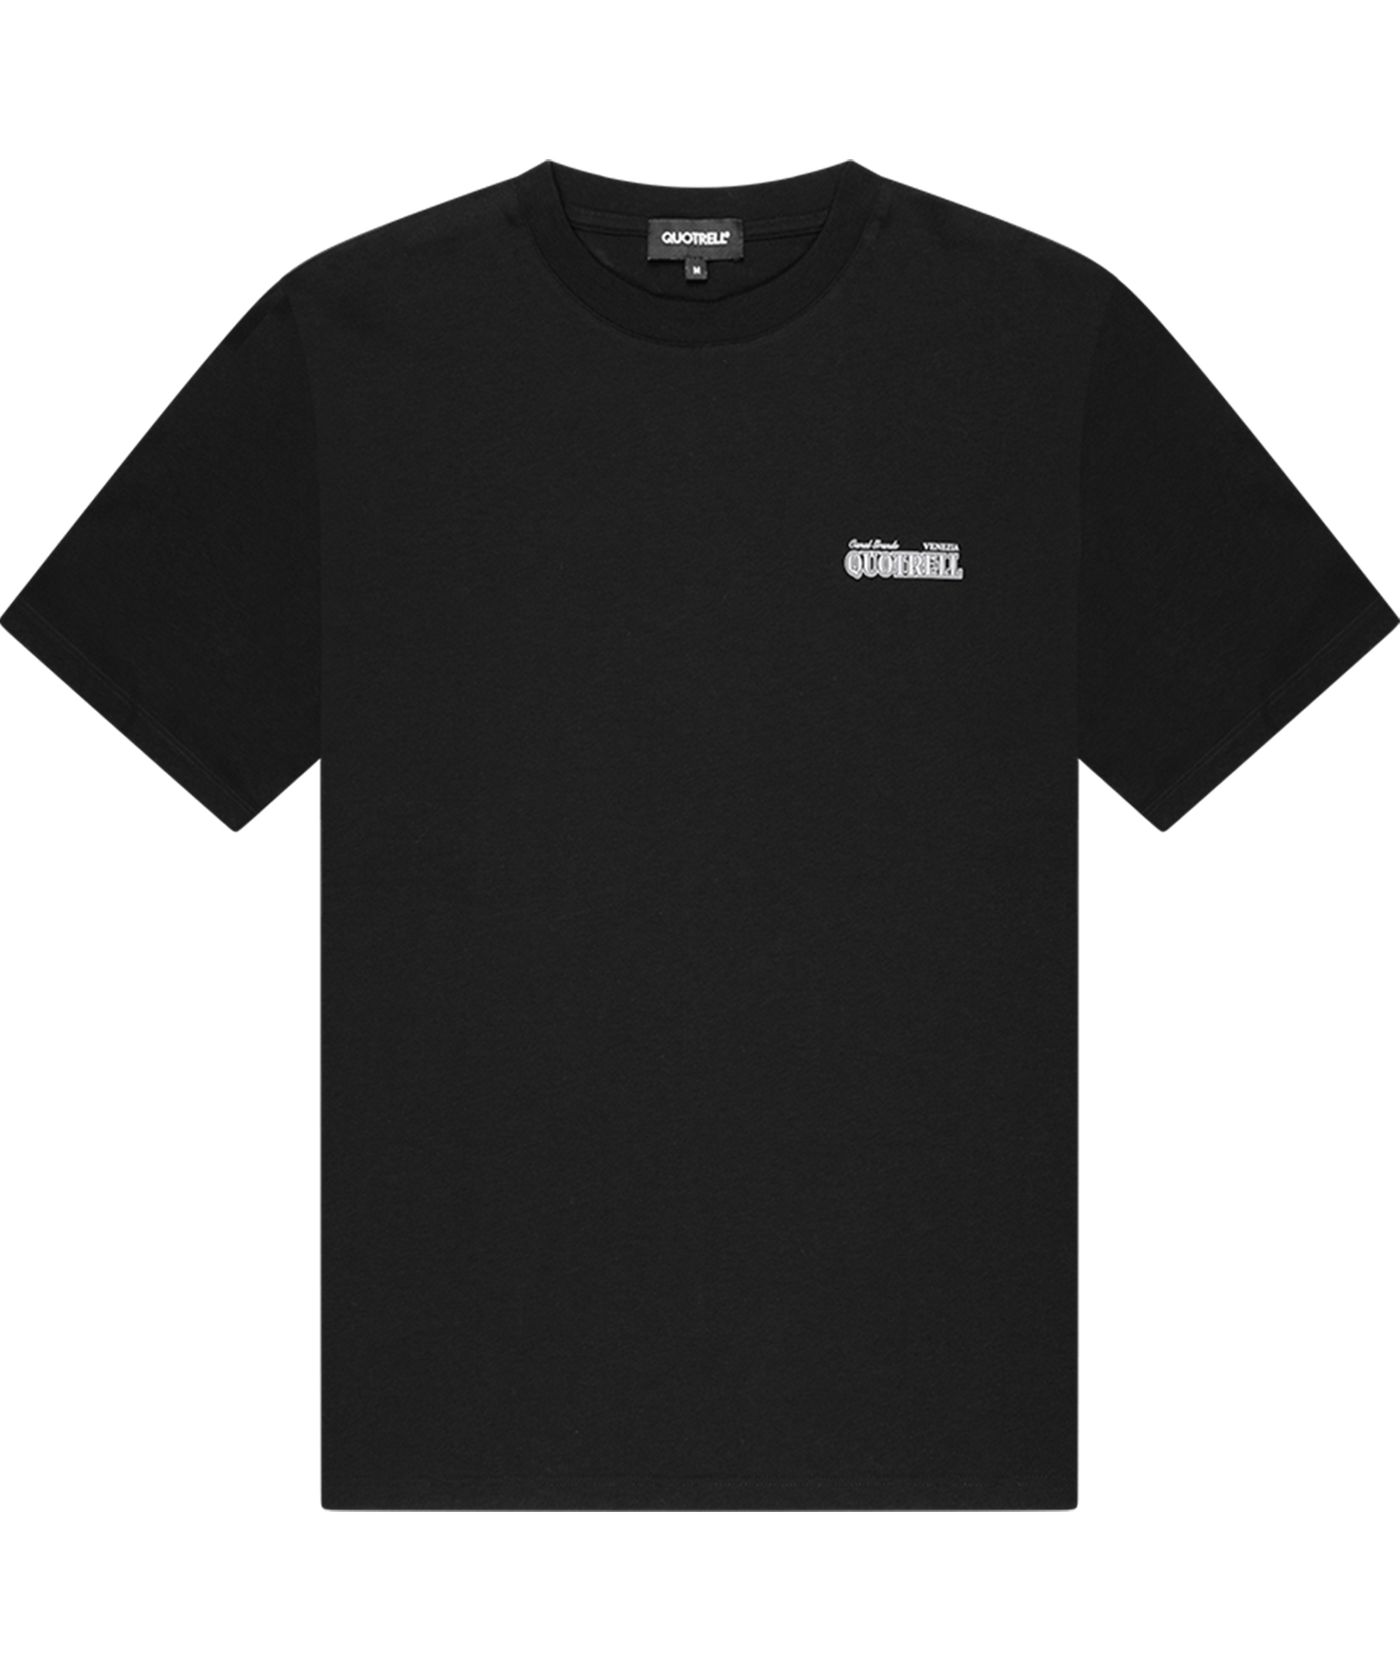 Quotrell - Venezia - T-shirt - Black/white